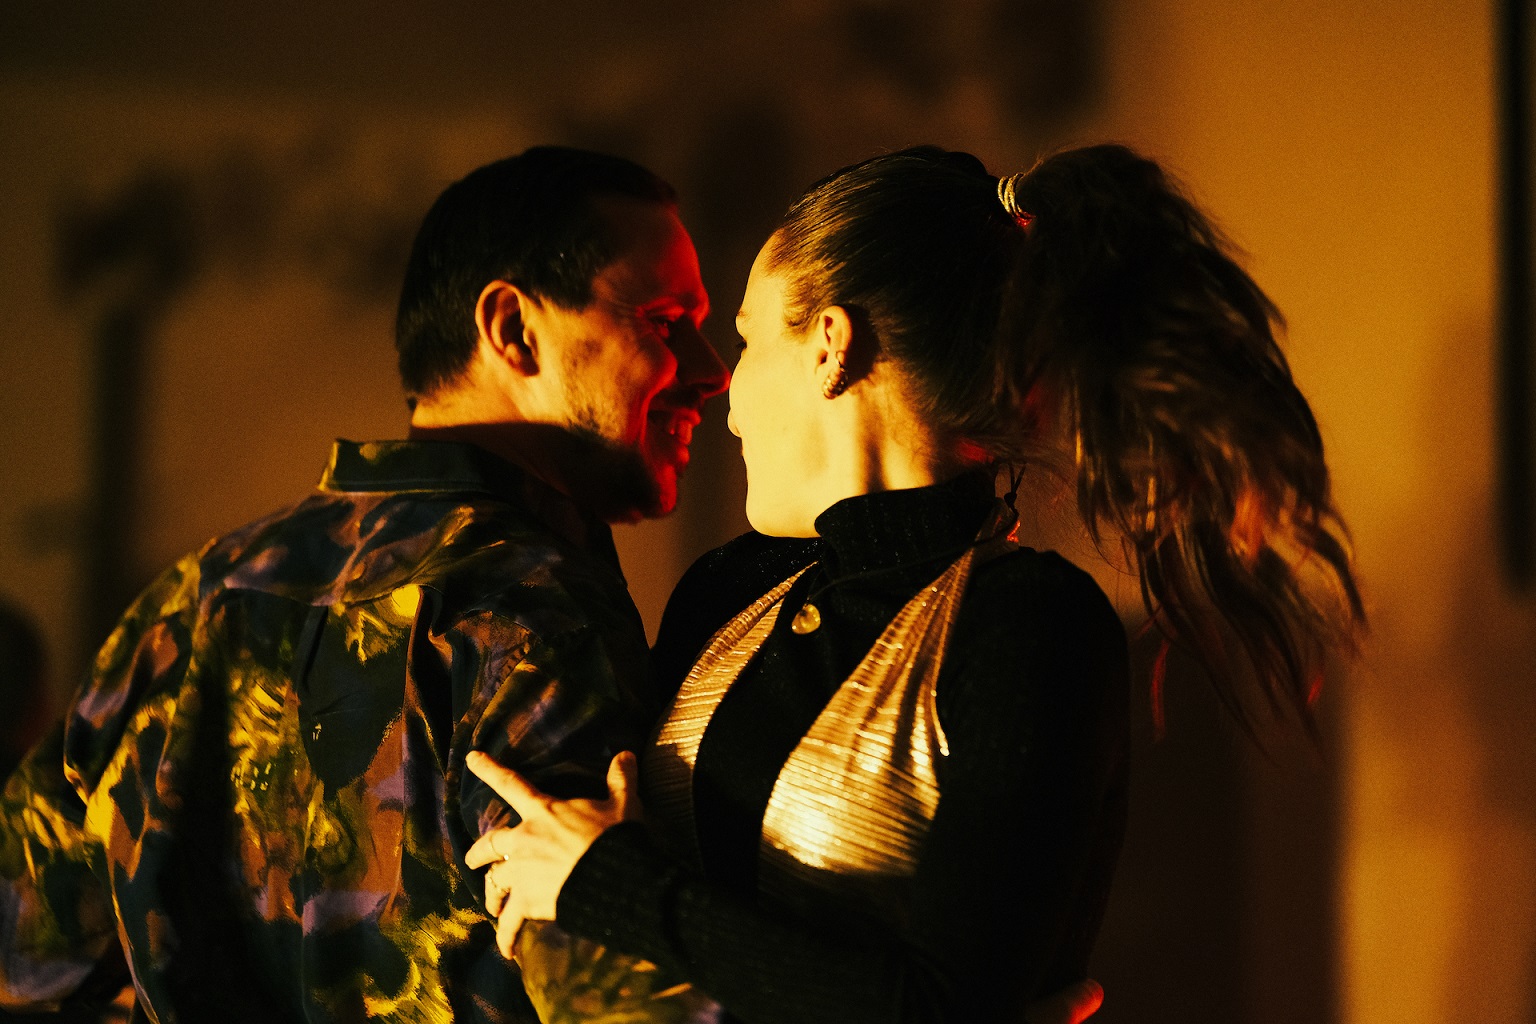 Mężczyzna i kobieta wirują w tańcu w poświacie pomarańczowego światła.